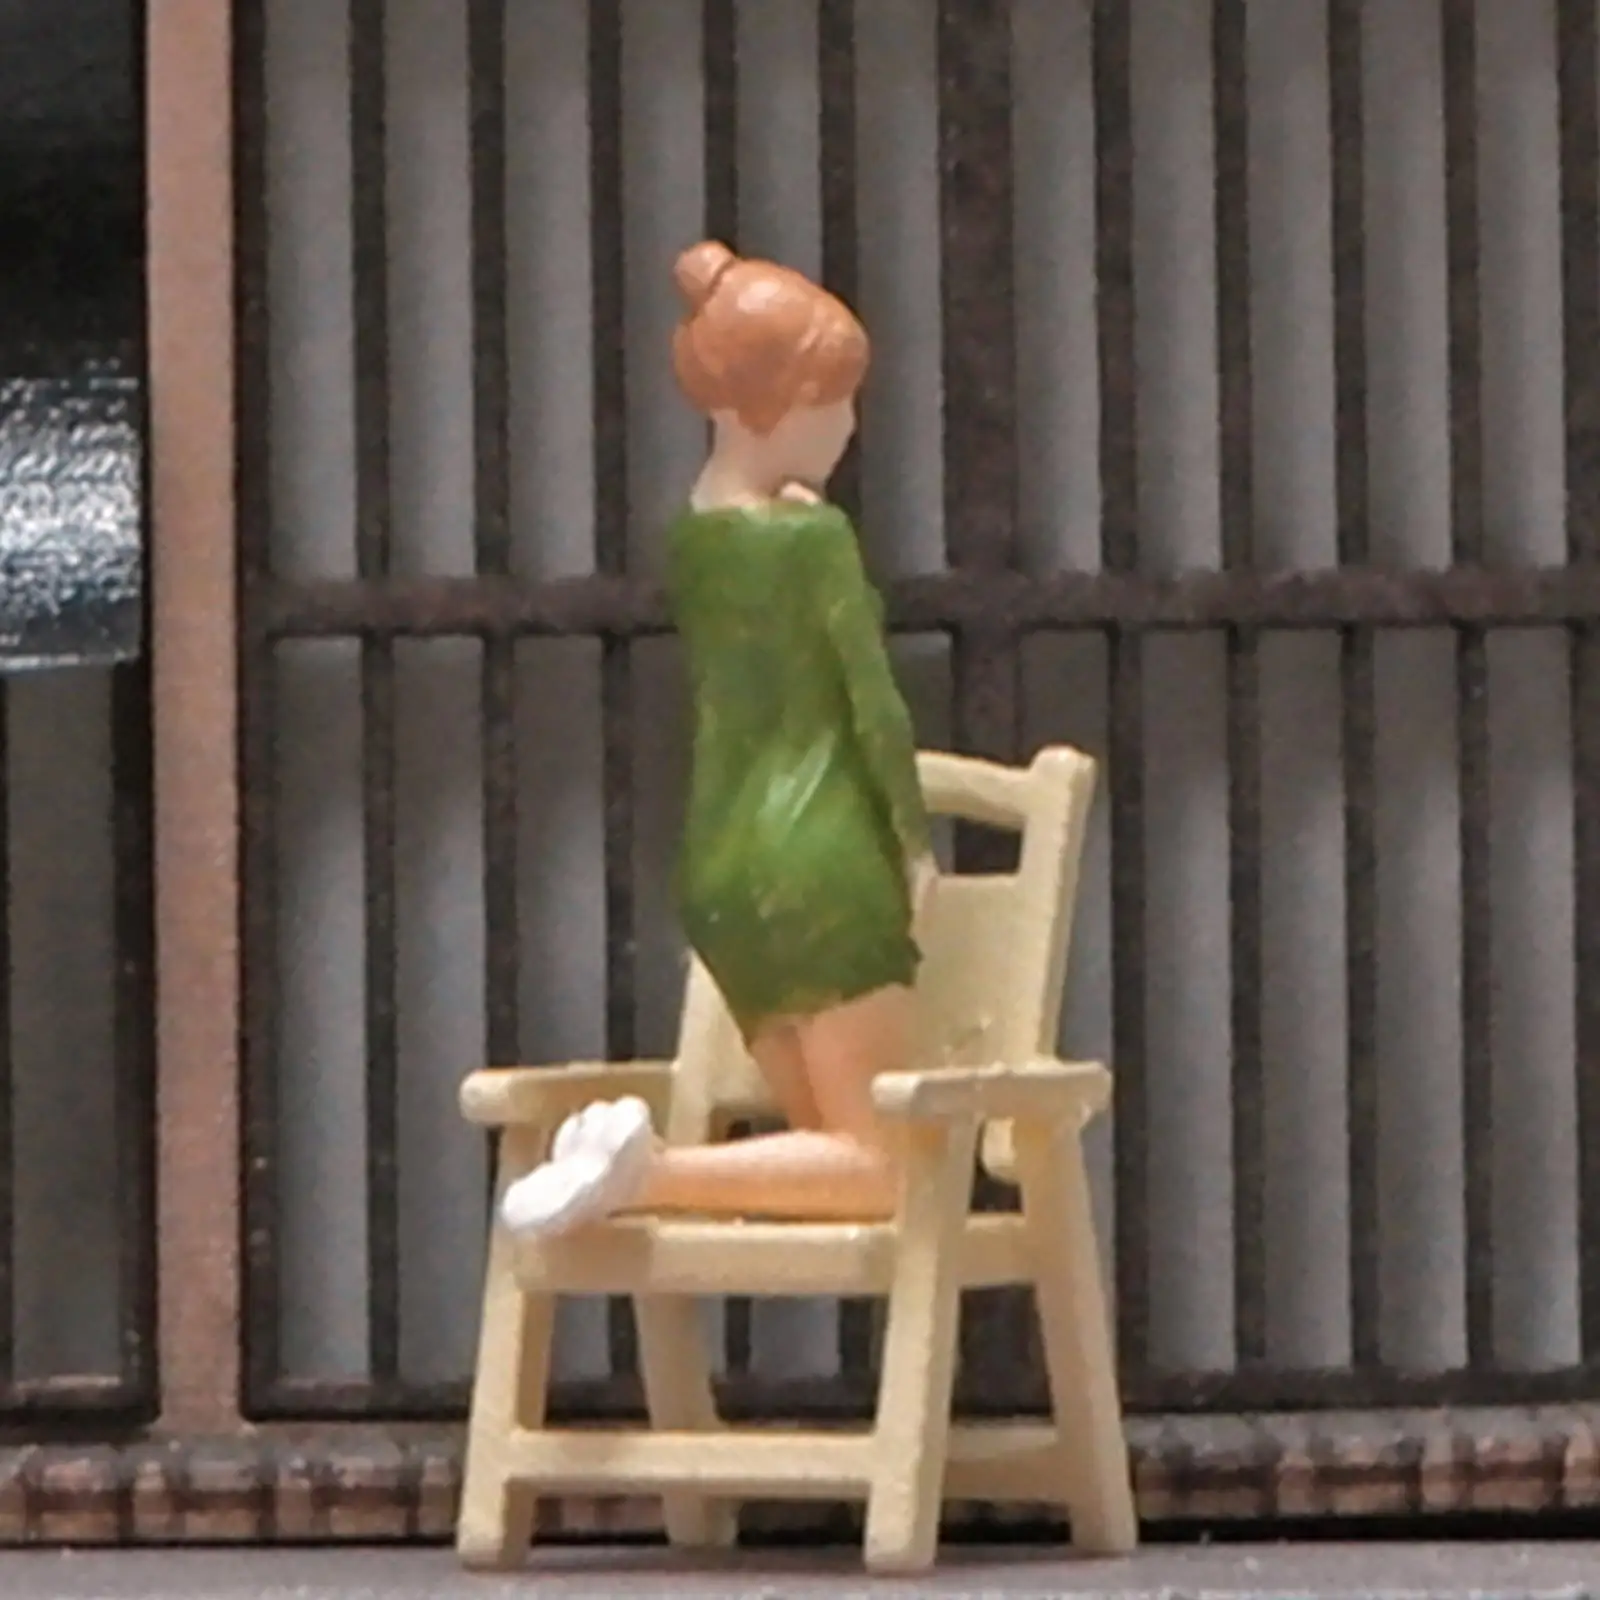 1/64 Scale People Figures Mini People Figurines for Diorama Miniature Scene